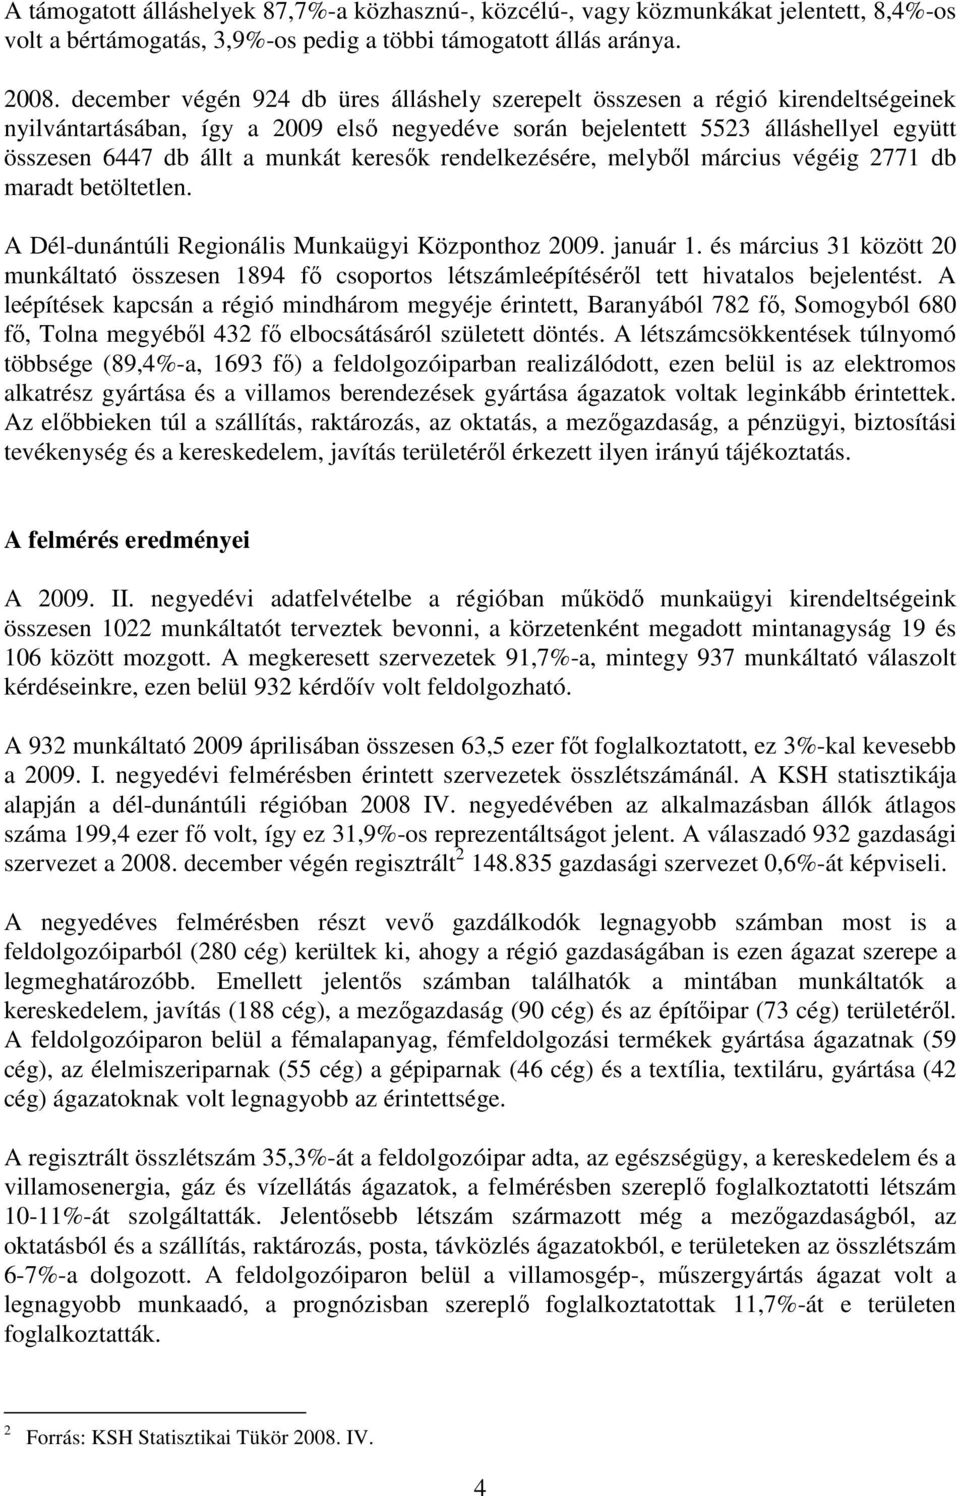 munkát keresık rendelkezésére, melybıl március végéig 2771 db maradt betöltetlen. A Dél-dunántúli Regionális Munkaügyi Központhoz 2009. január 1.